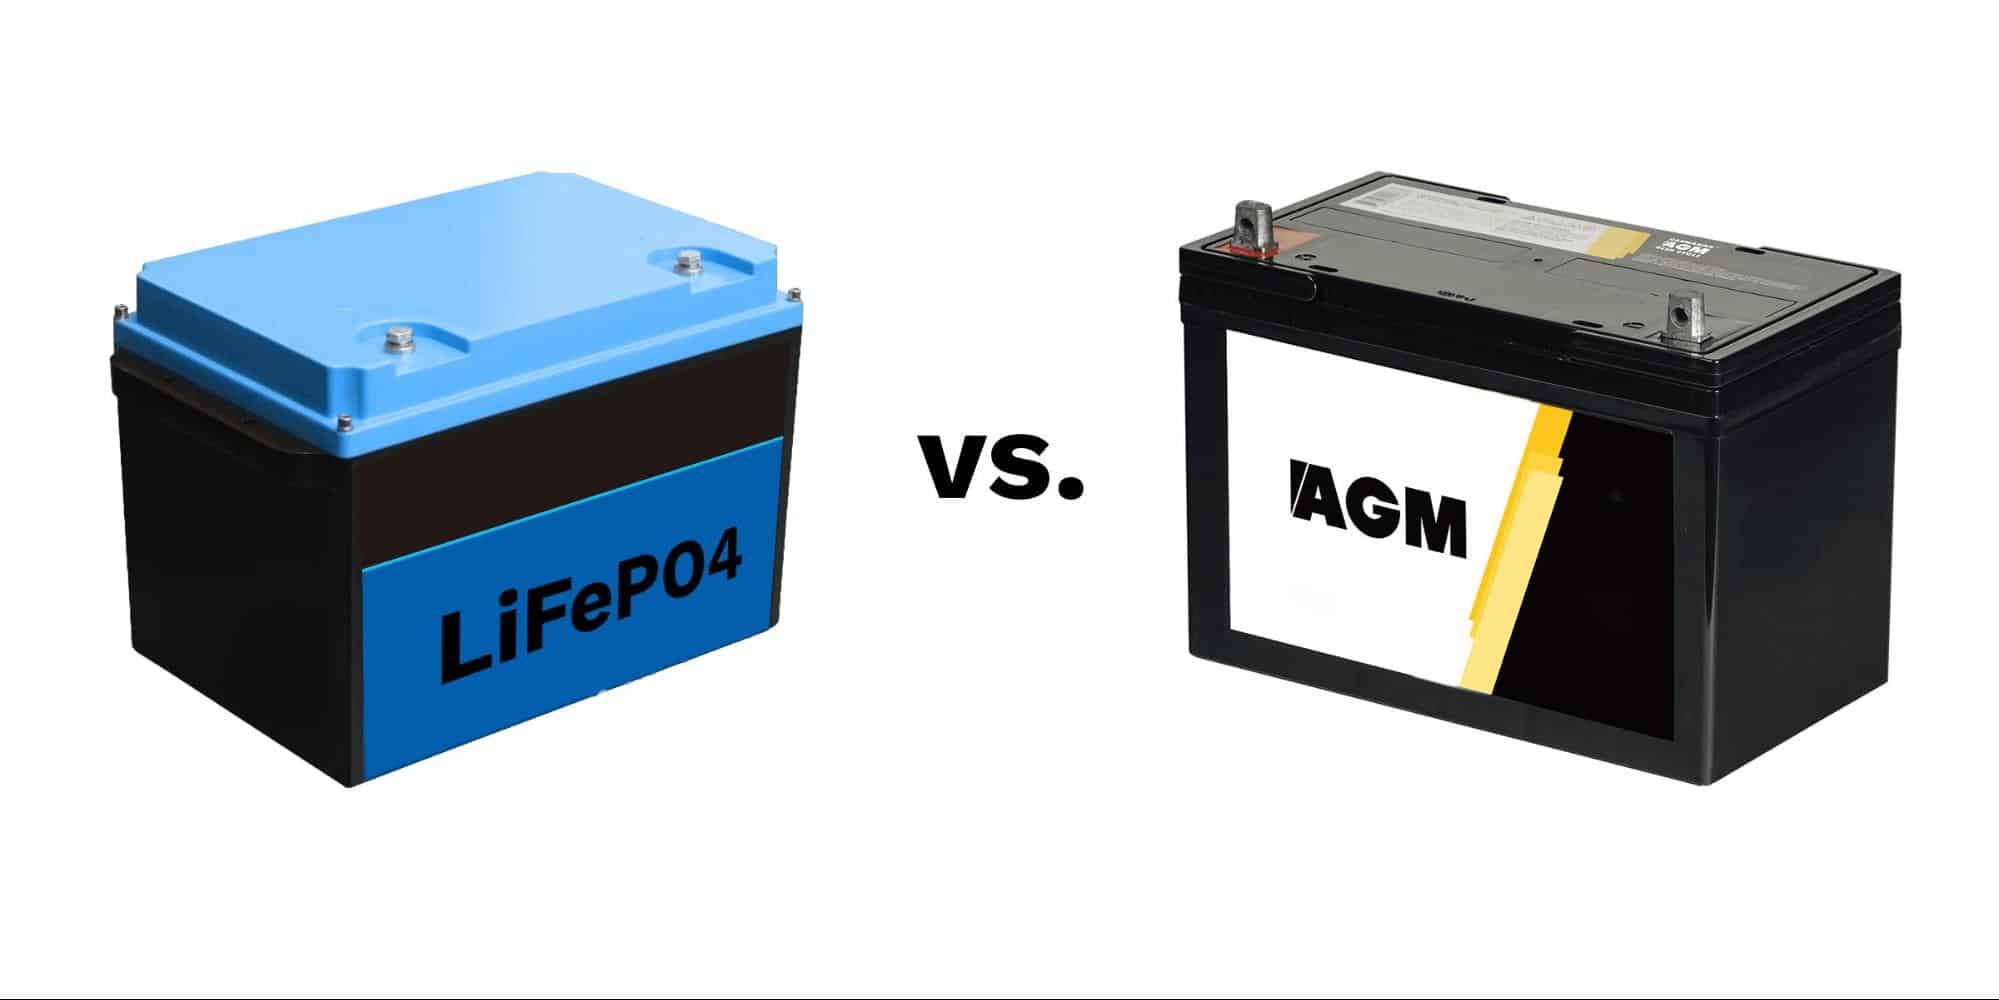 Image comparison of lithium vs. AGM batteries